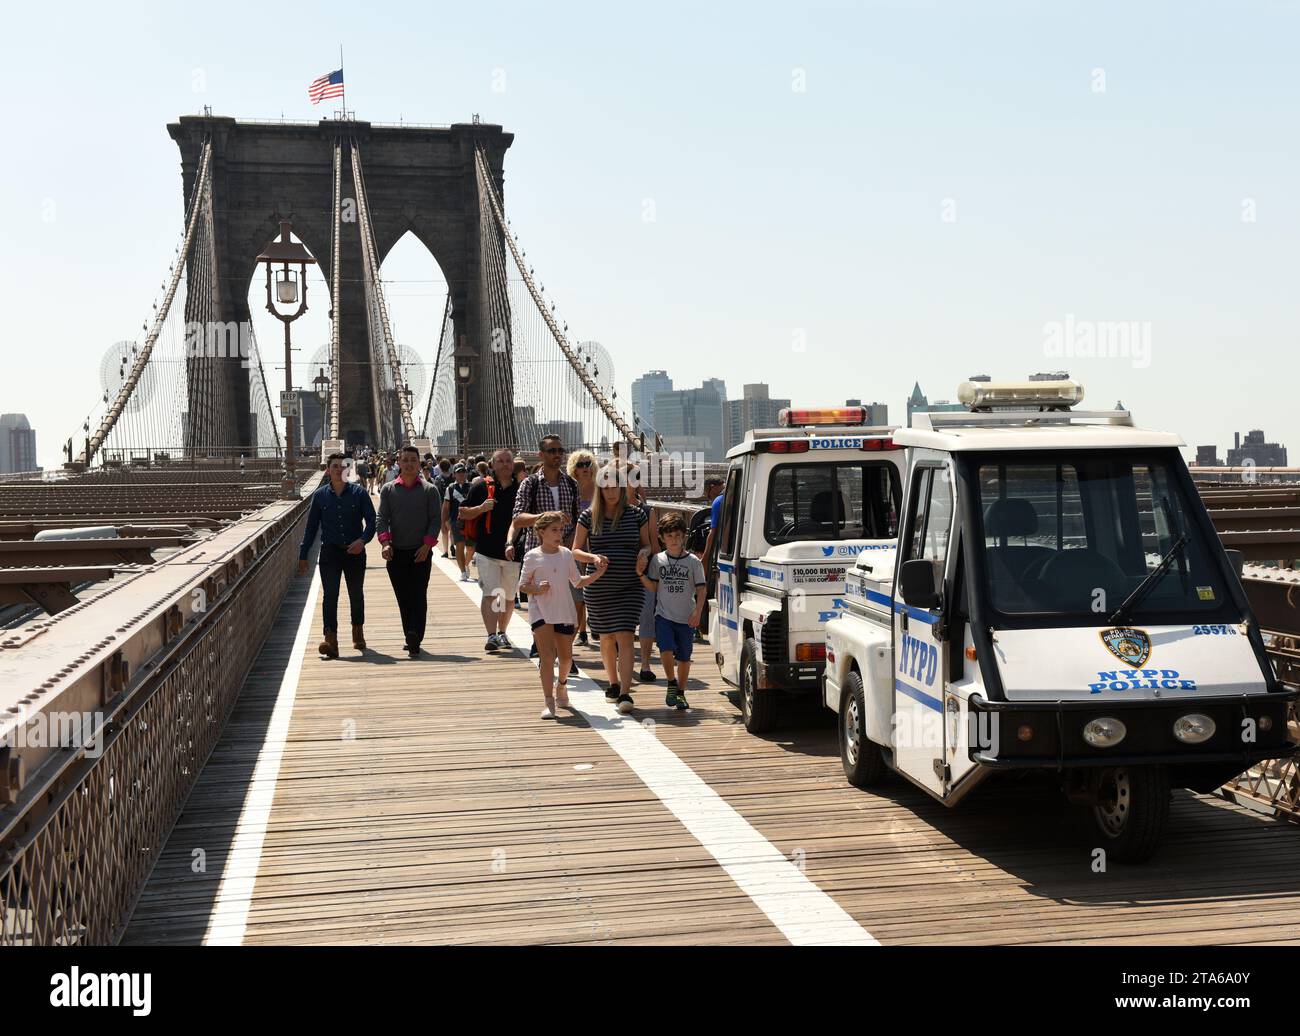 New York, USA - 25. Mai 2018: Polizeiauto und Menschenmenge auf der Brooklyn Bridge mit Finanzviertel in Lower Manhattan im Hintergrund. Stockfoto